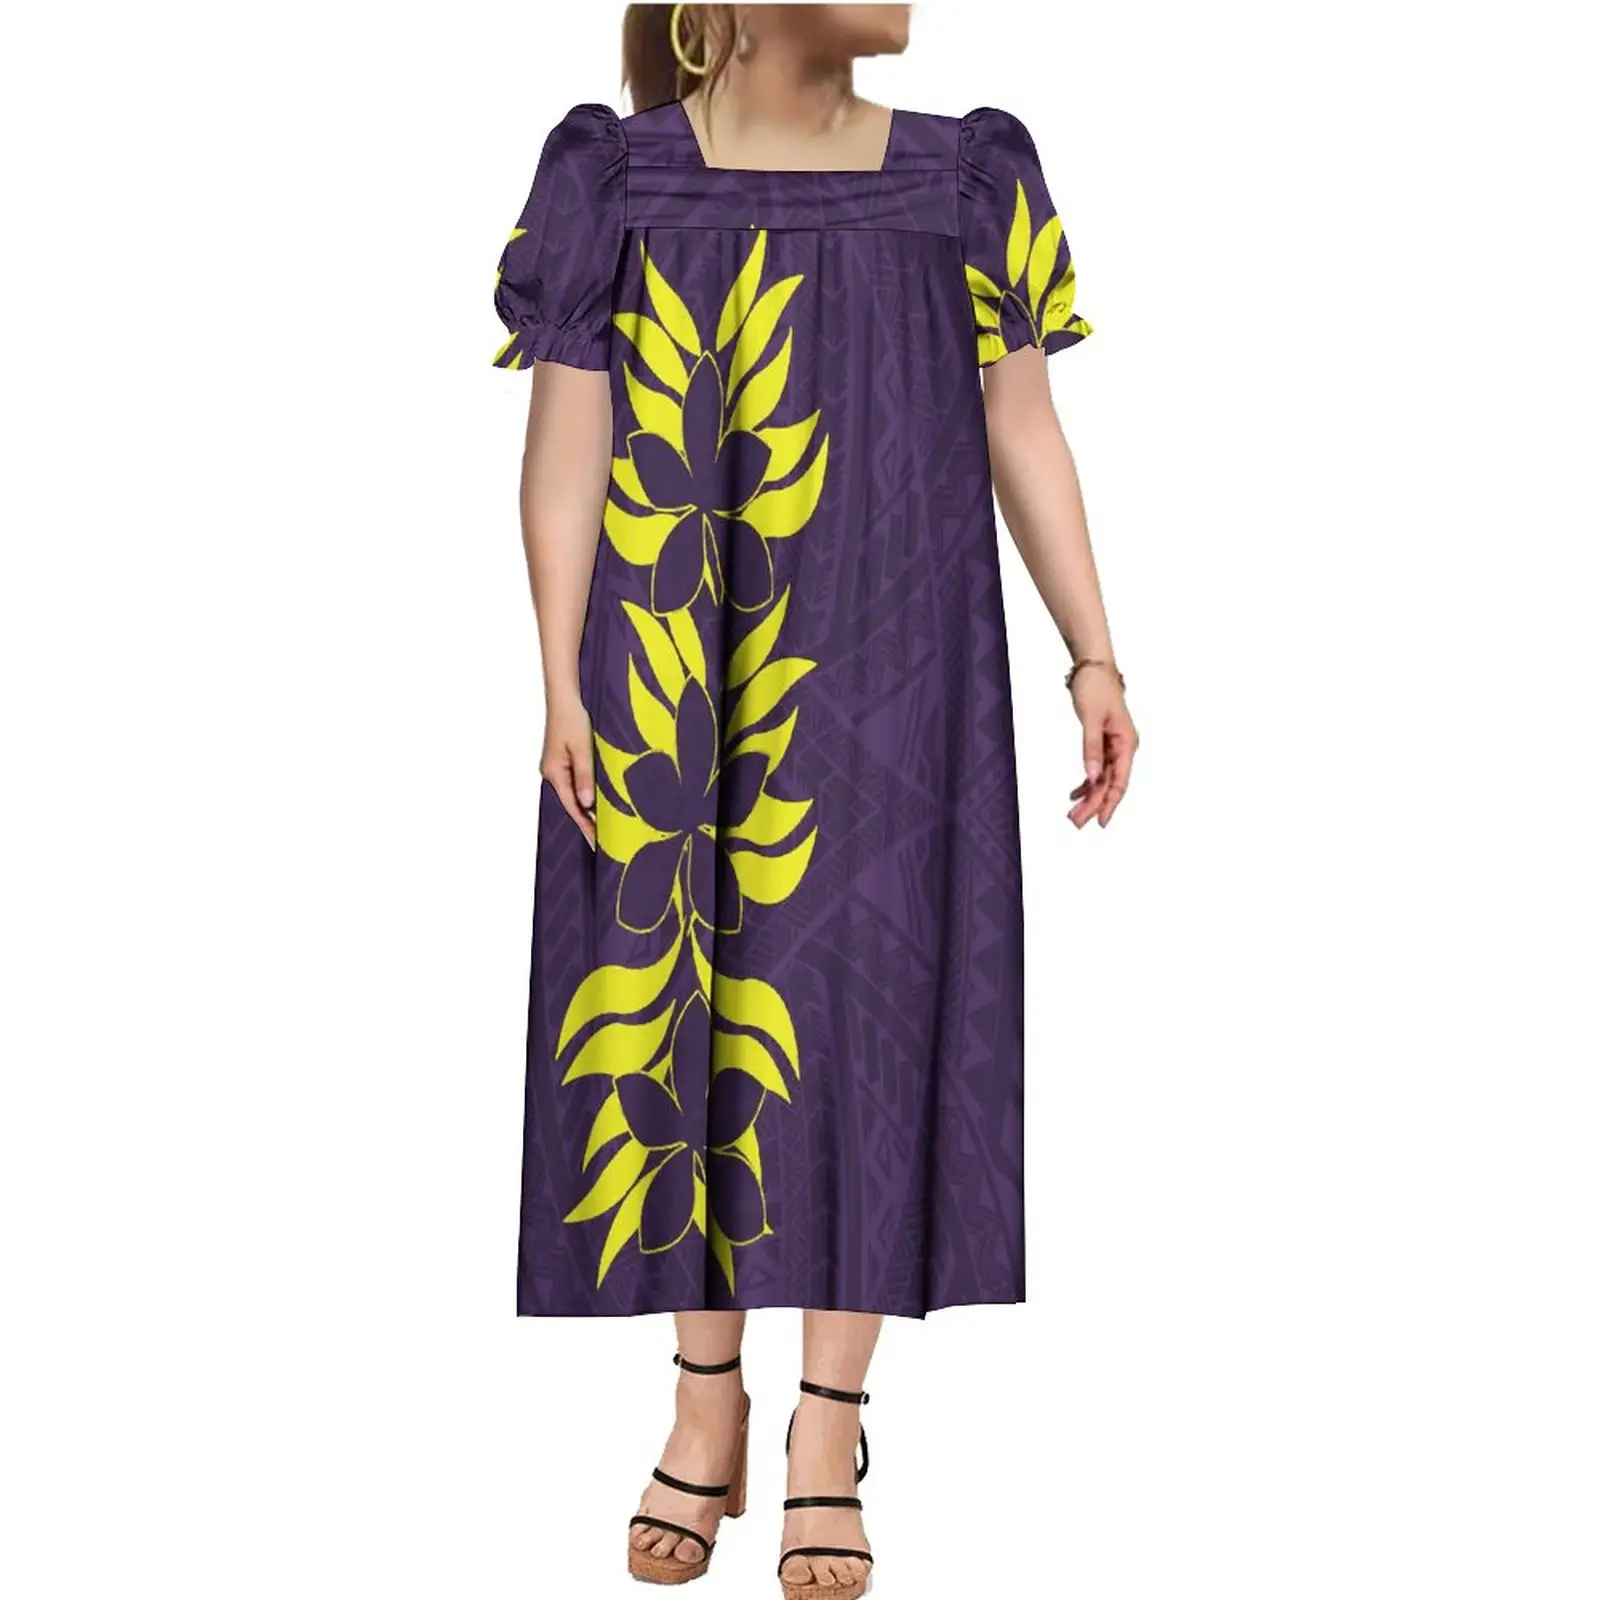 Nouveau style 4 voies extensible Micronésie Mumu Mumus bouffée à manches courtes robe micronésienne personnalisée polynésienne lâche bouffante robes décontractées